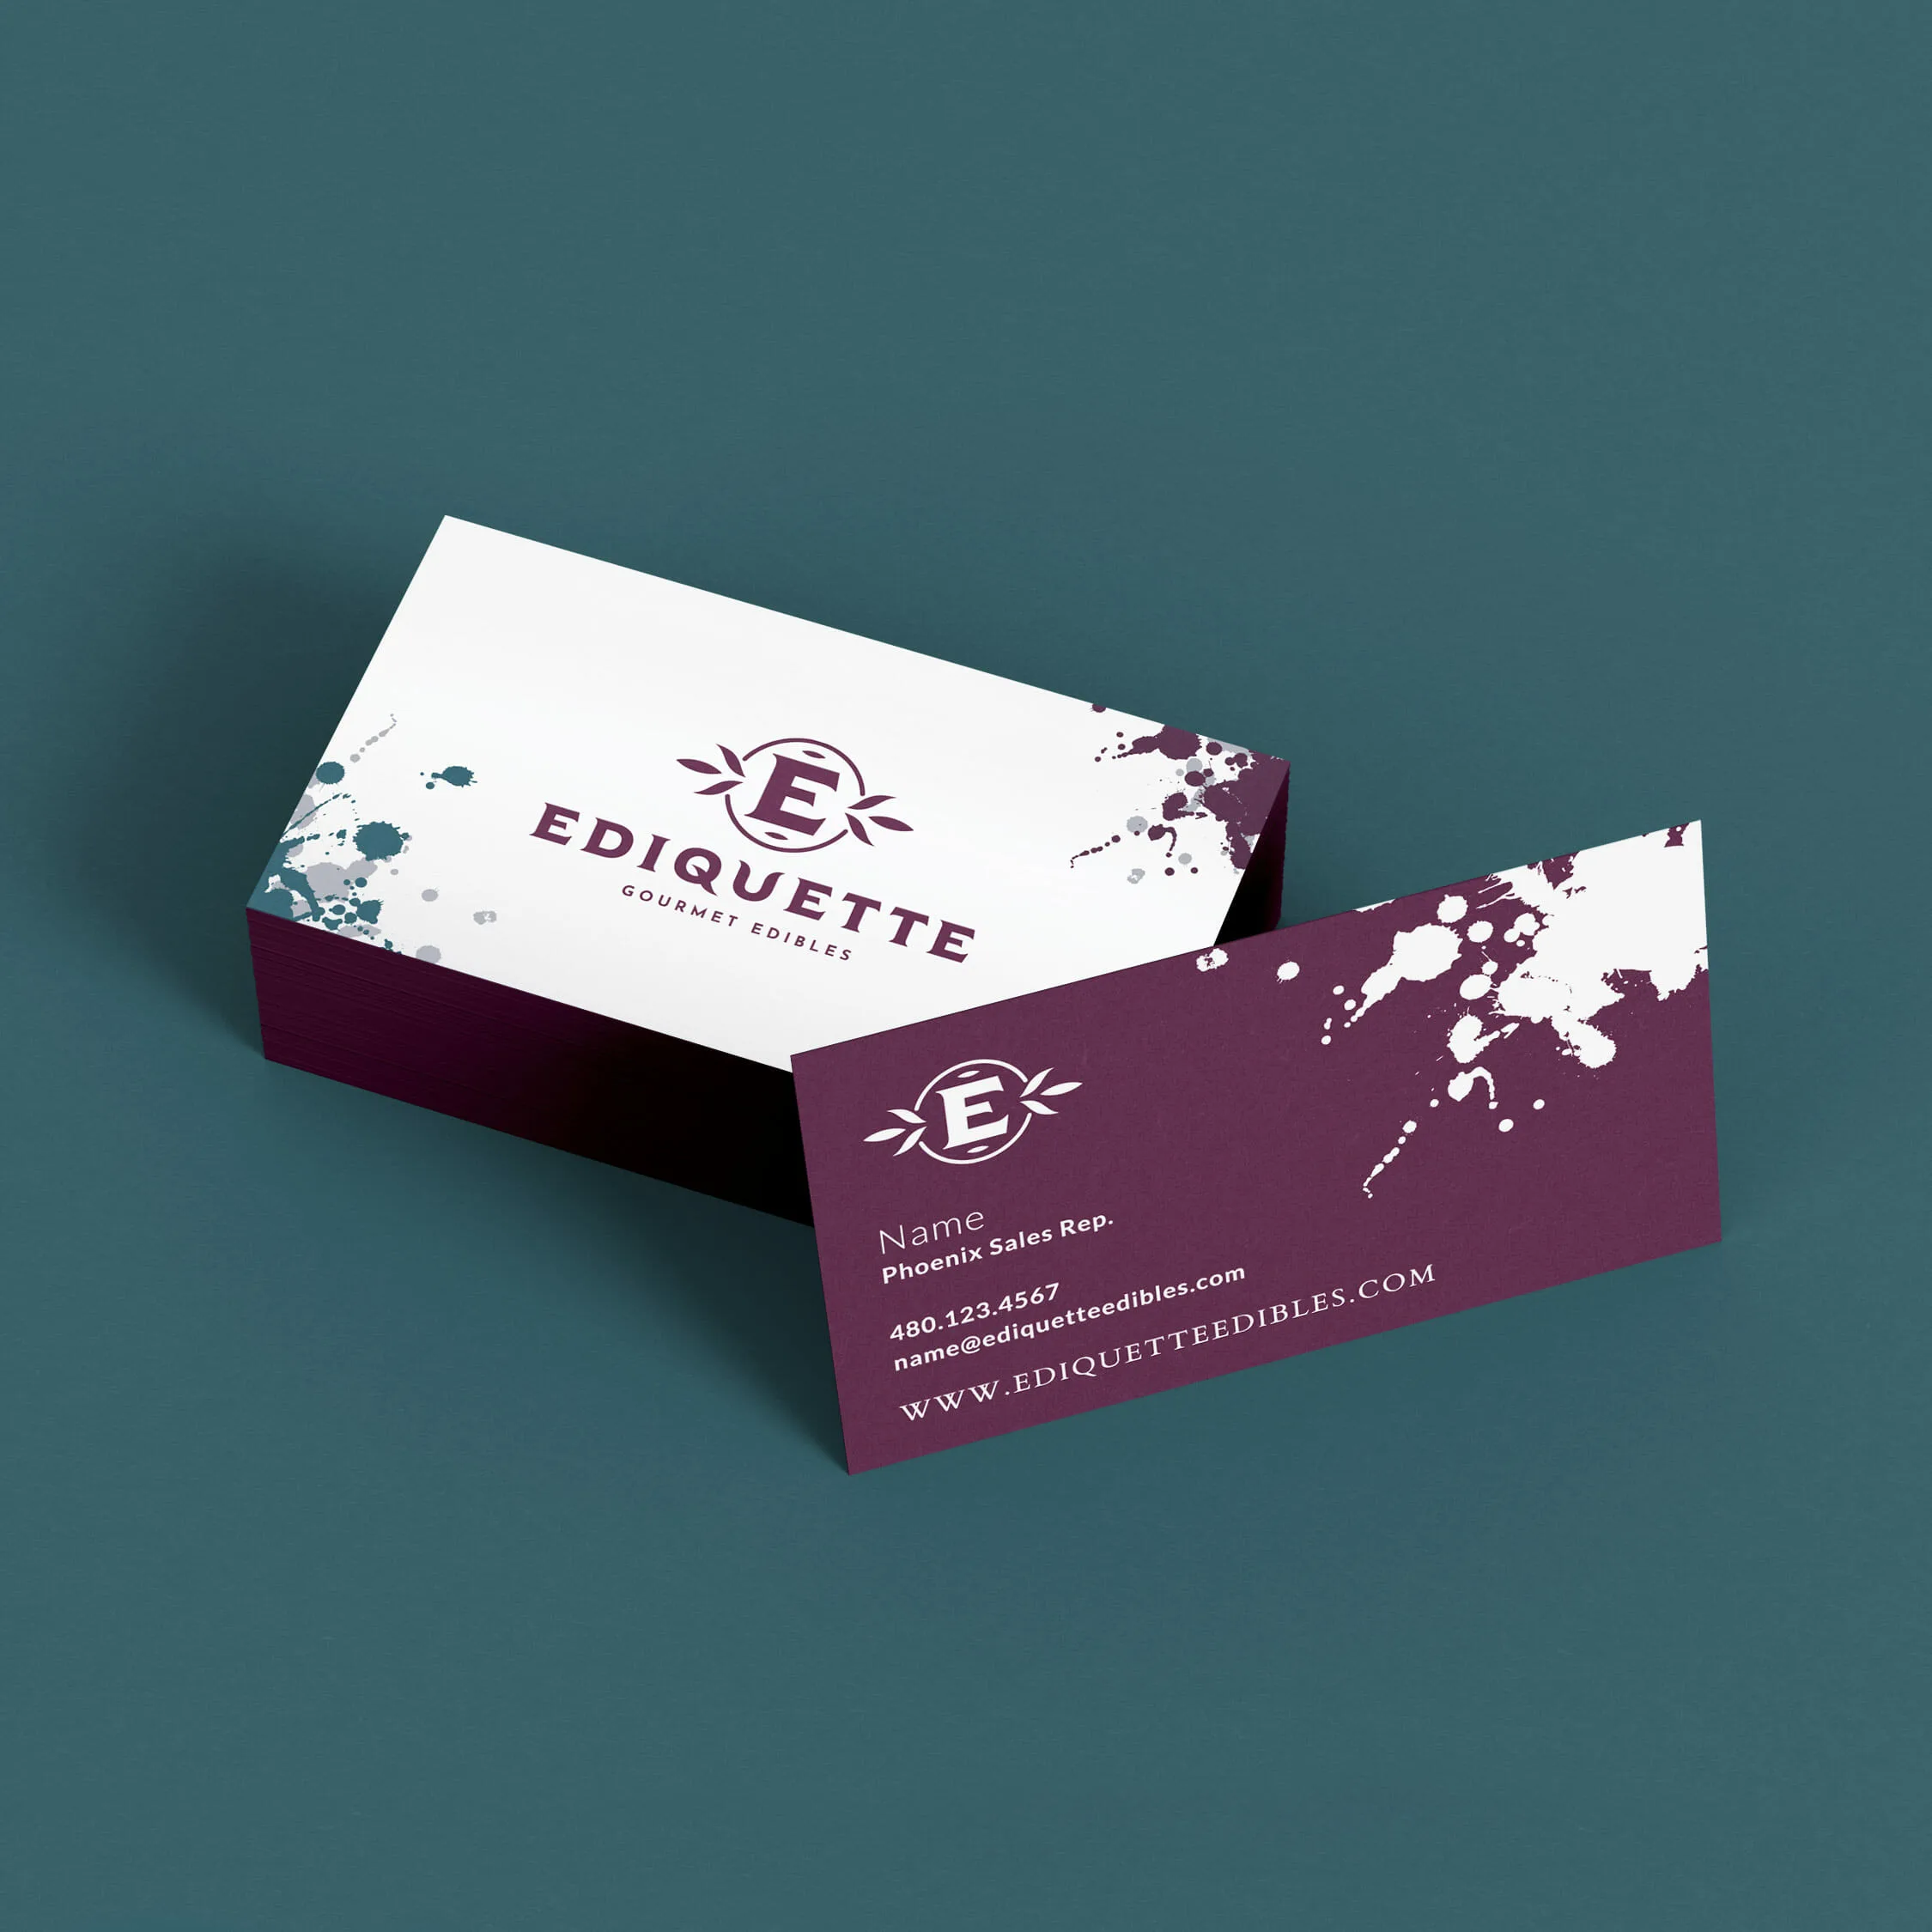 Ediquette Business Cards